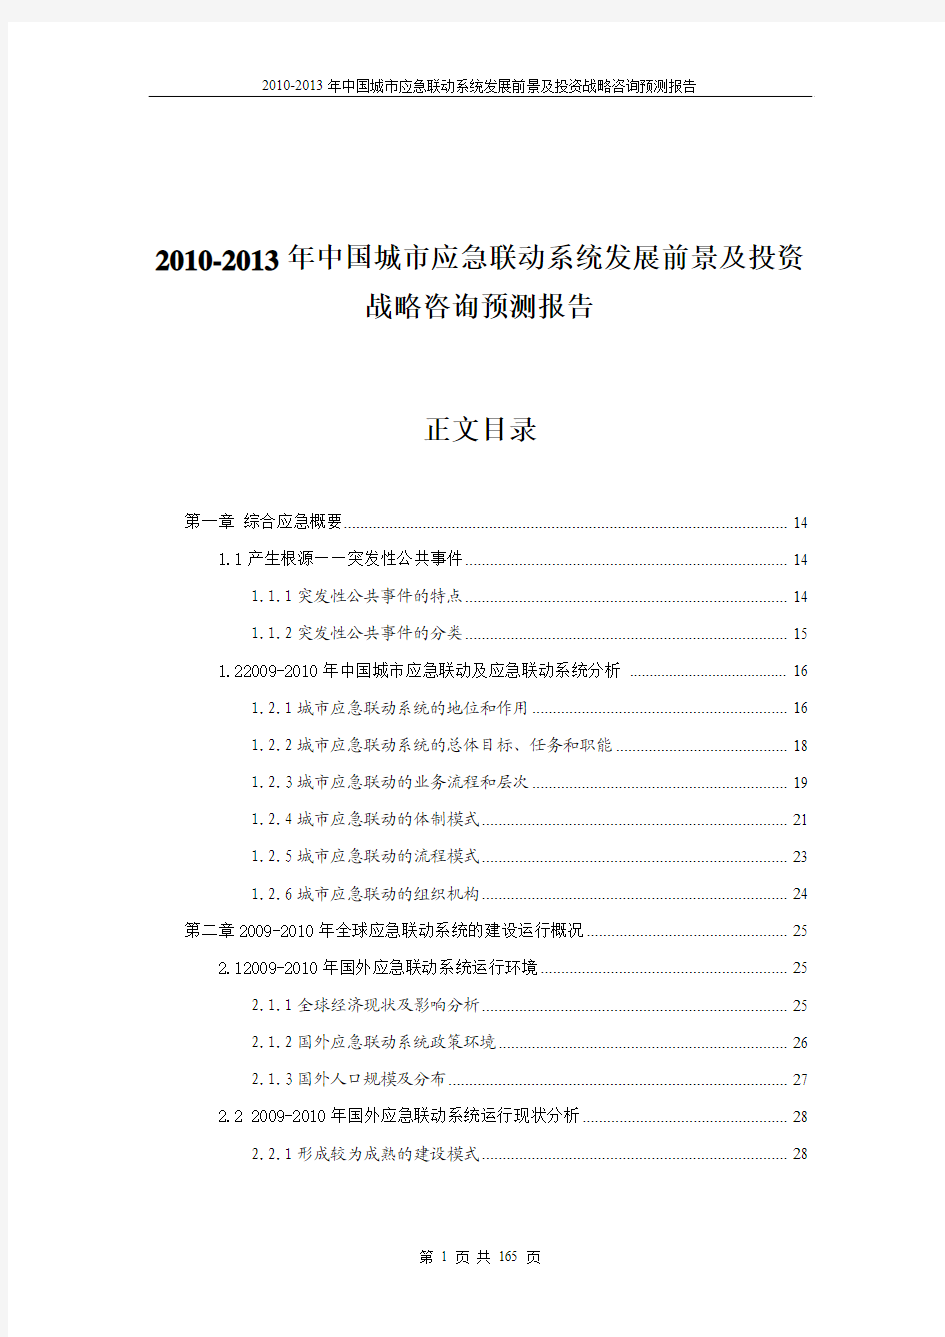 中国城市应急联动系统发展前景及投资战略咨询预测报告(专业版)